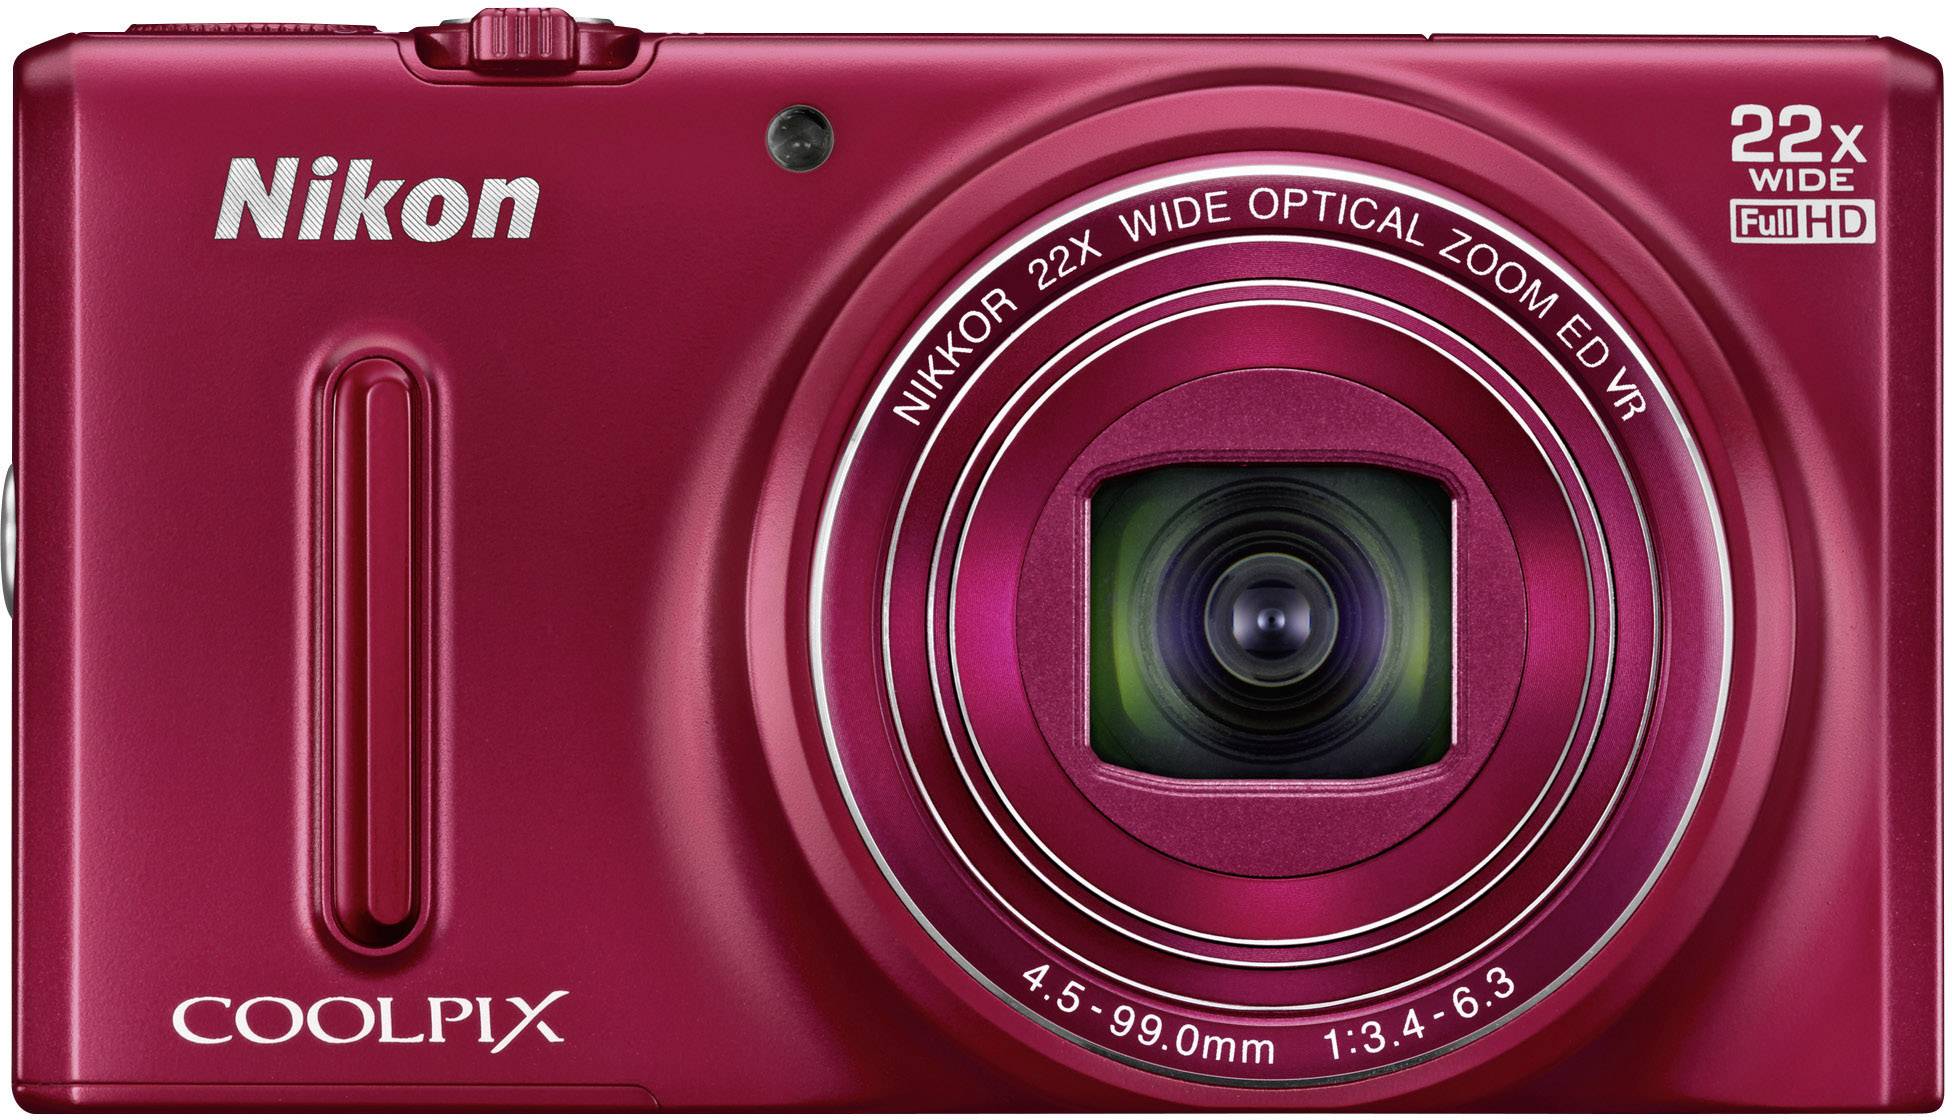 Nikon Coolpix S9600 Digital camera Red Conrad.com